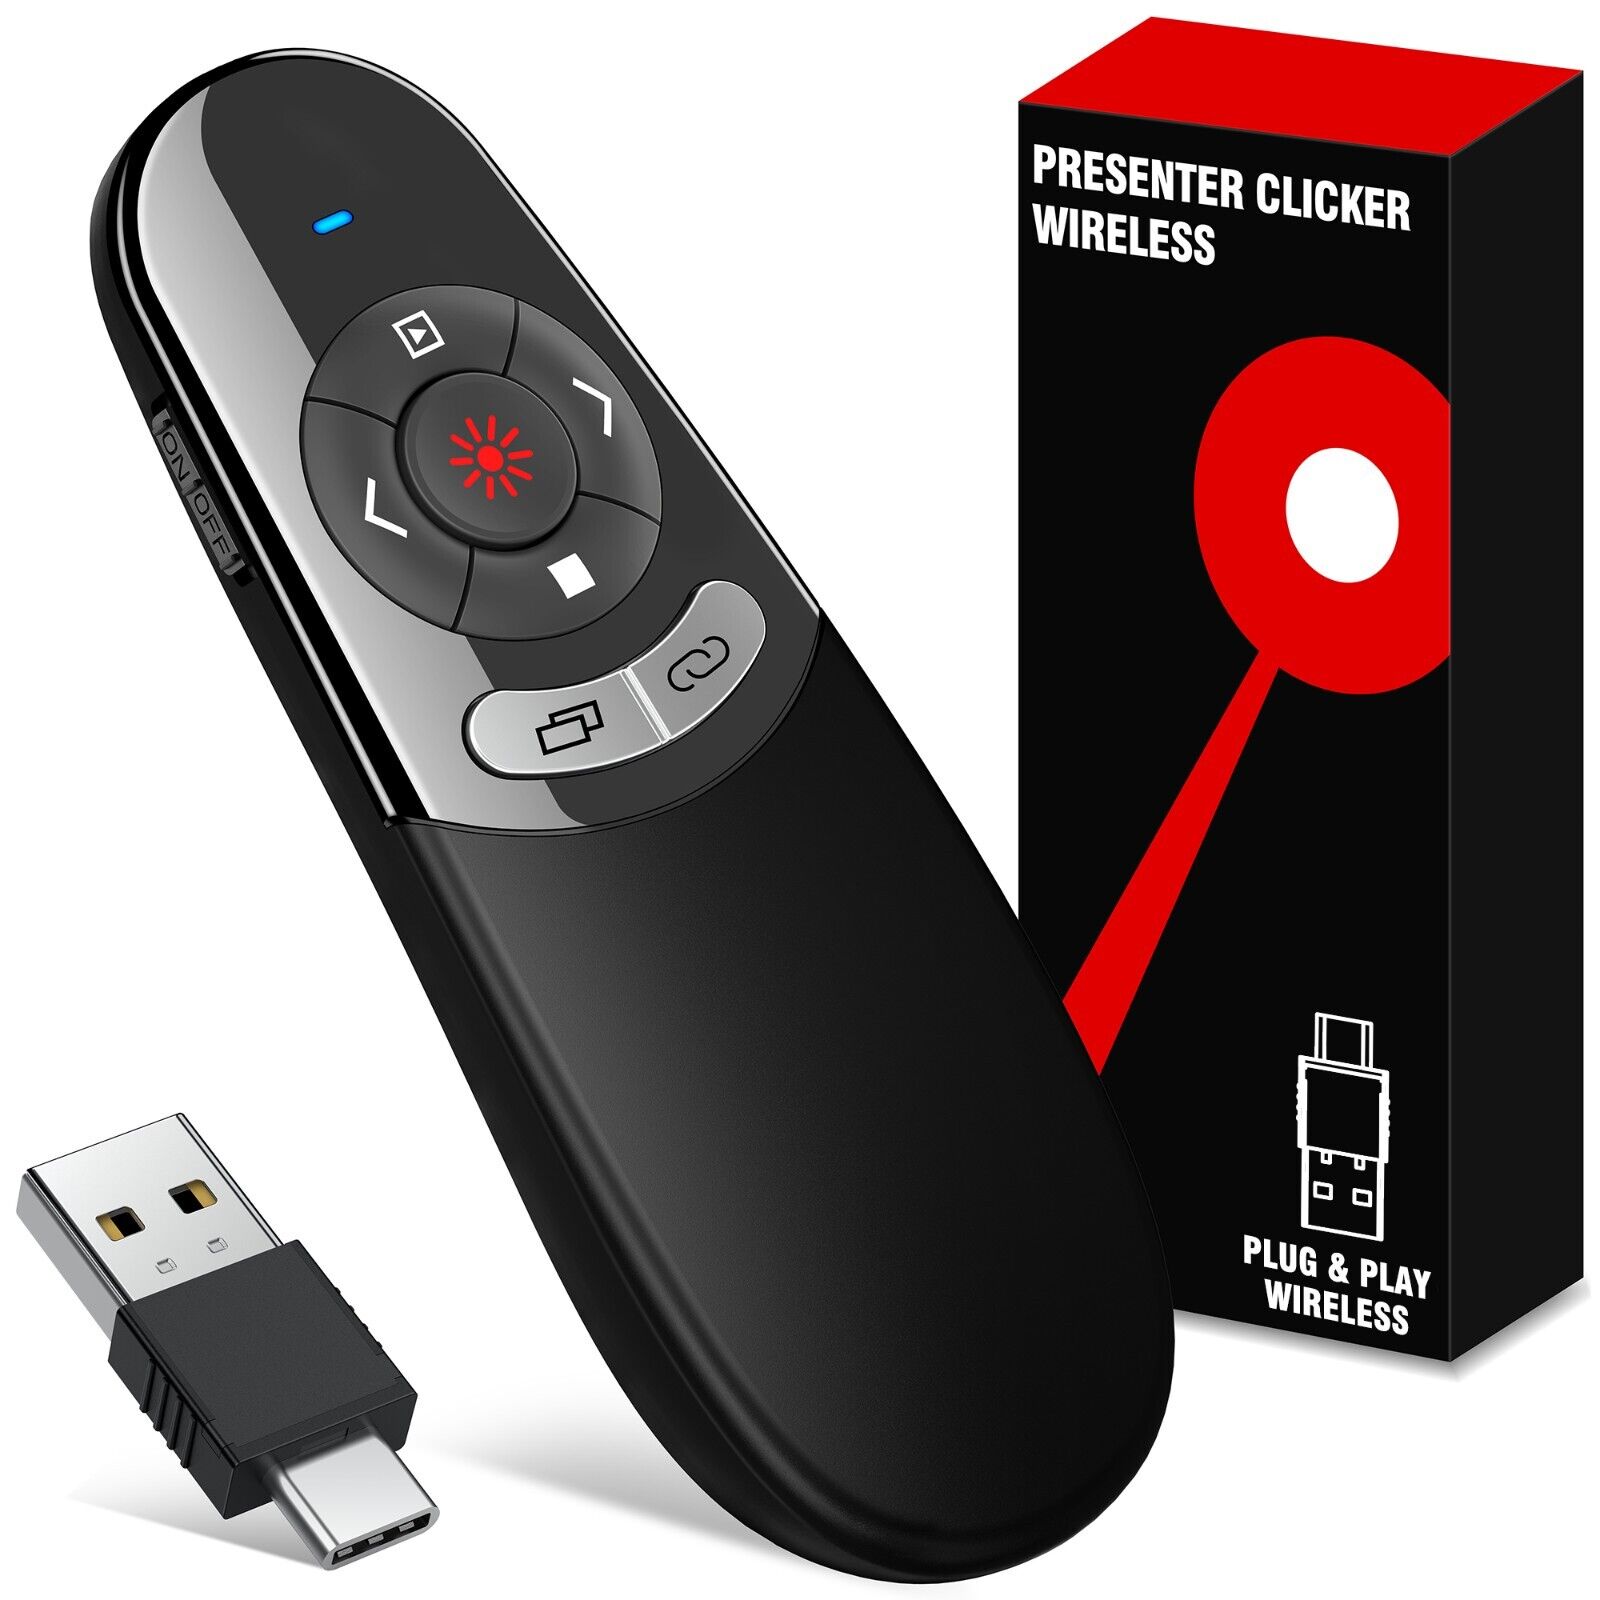 Presentation Wireless Presenter Remote USB Powerpoint Laser Pointer Clicker